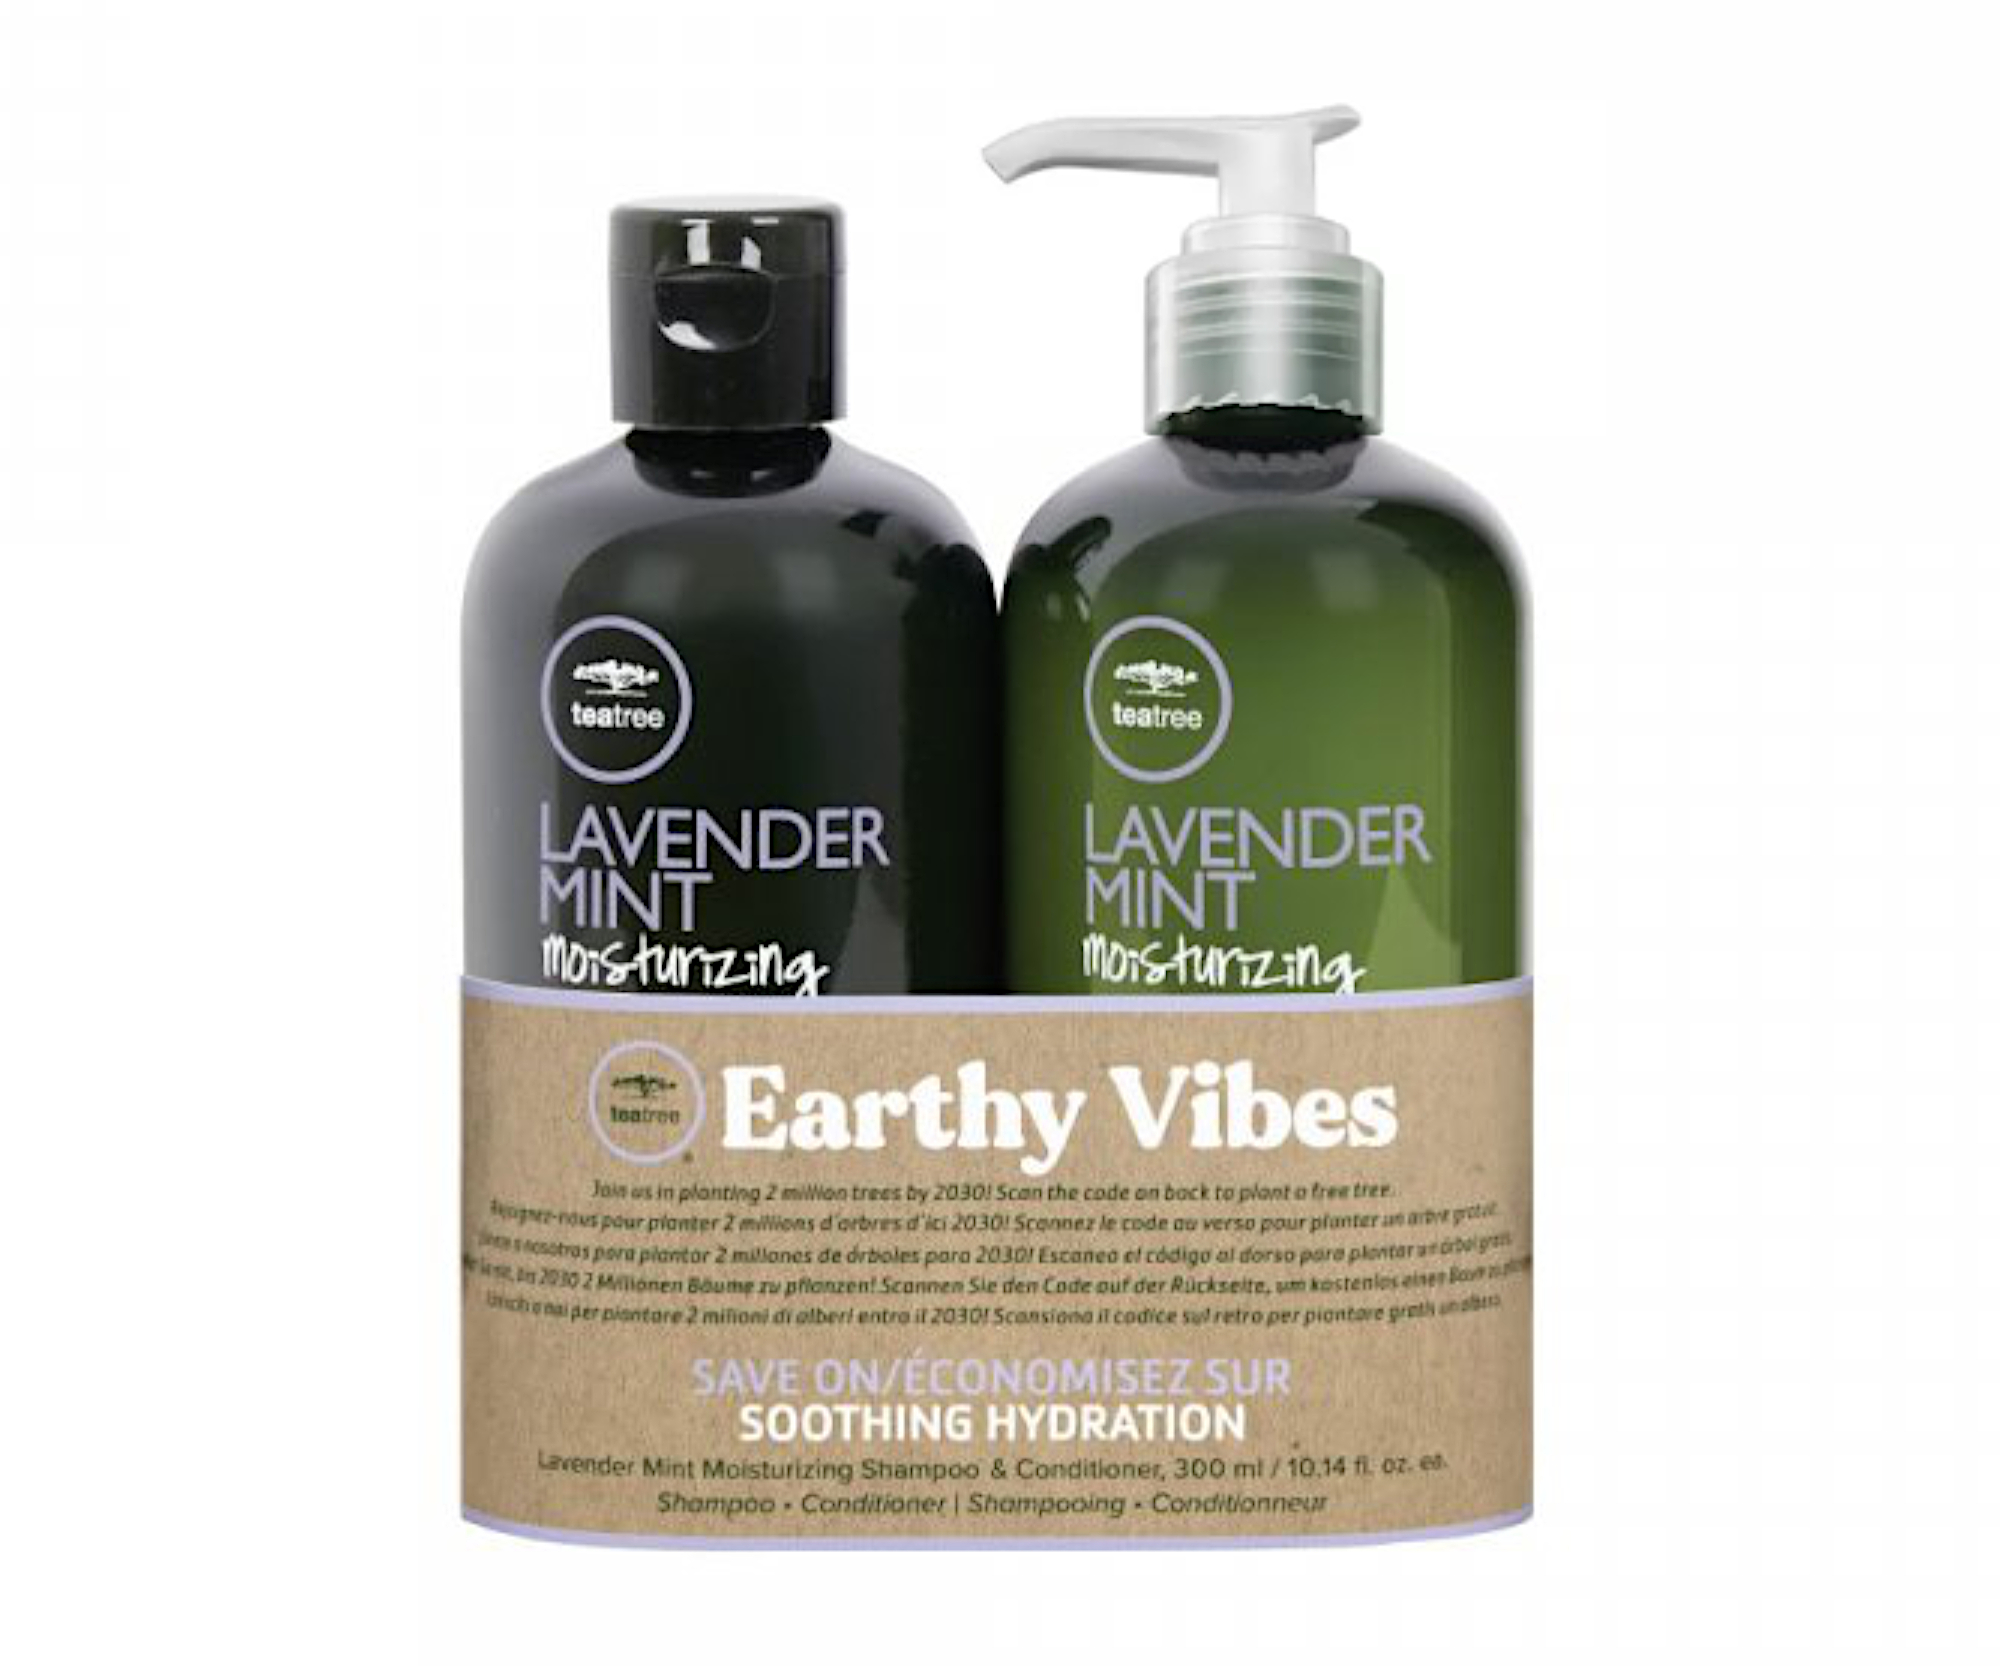 Sada pro hydrataci vlasů Paul Mitchell Tea Tree Lavender Mint Earthy Vibes + dárek zdarma